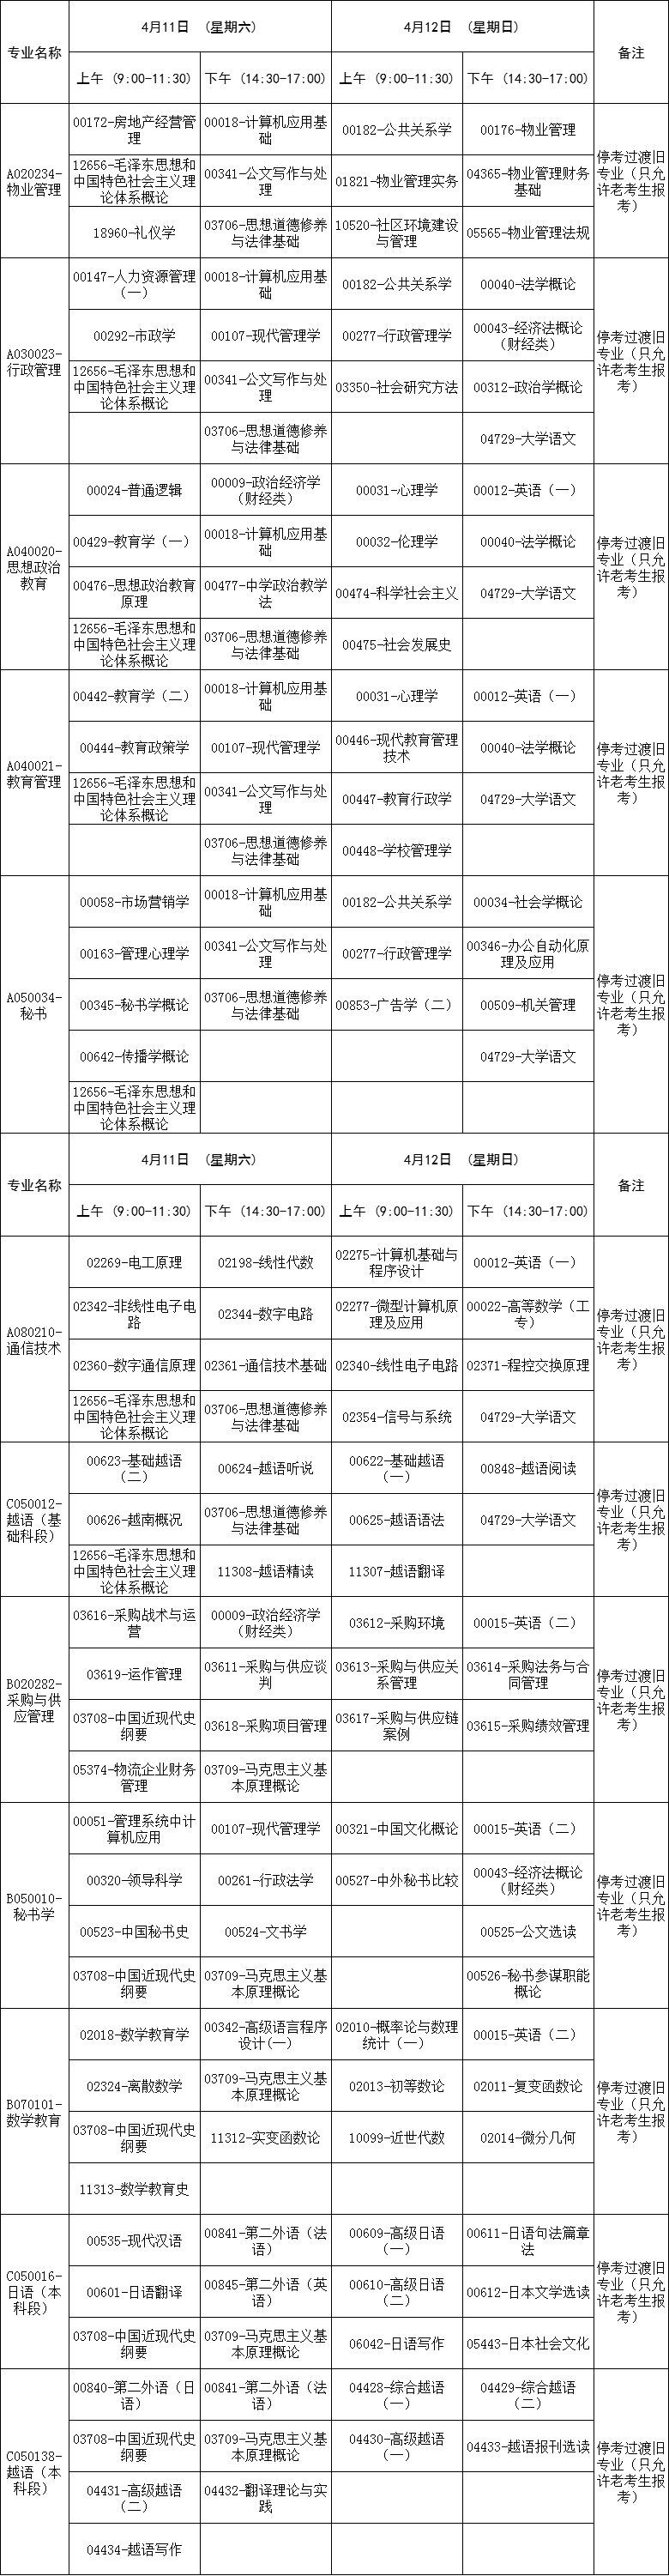 广西2020年高等教育自学考试4月课程考试时间安排表(停考过渡专业)